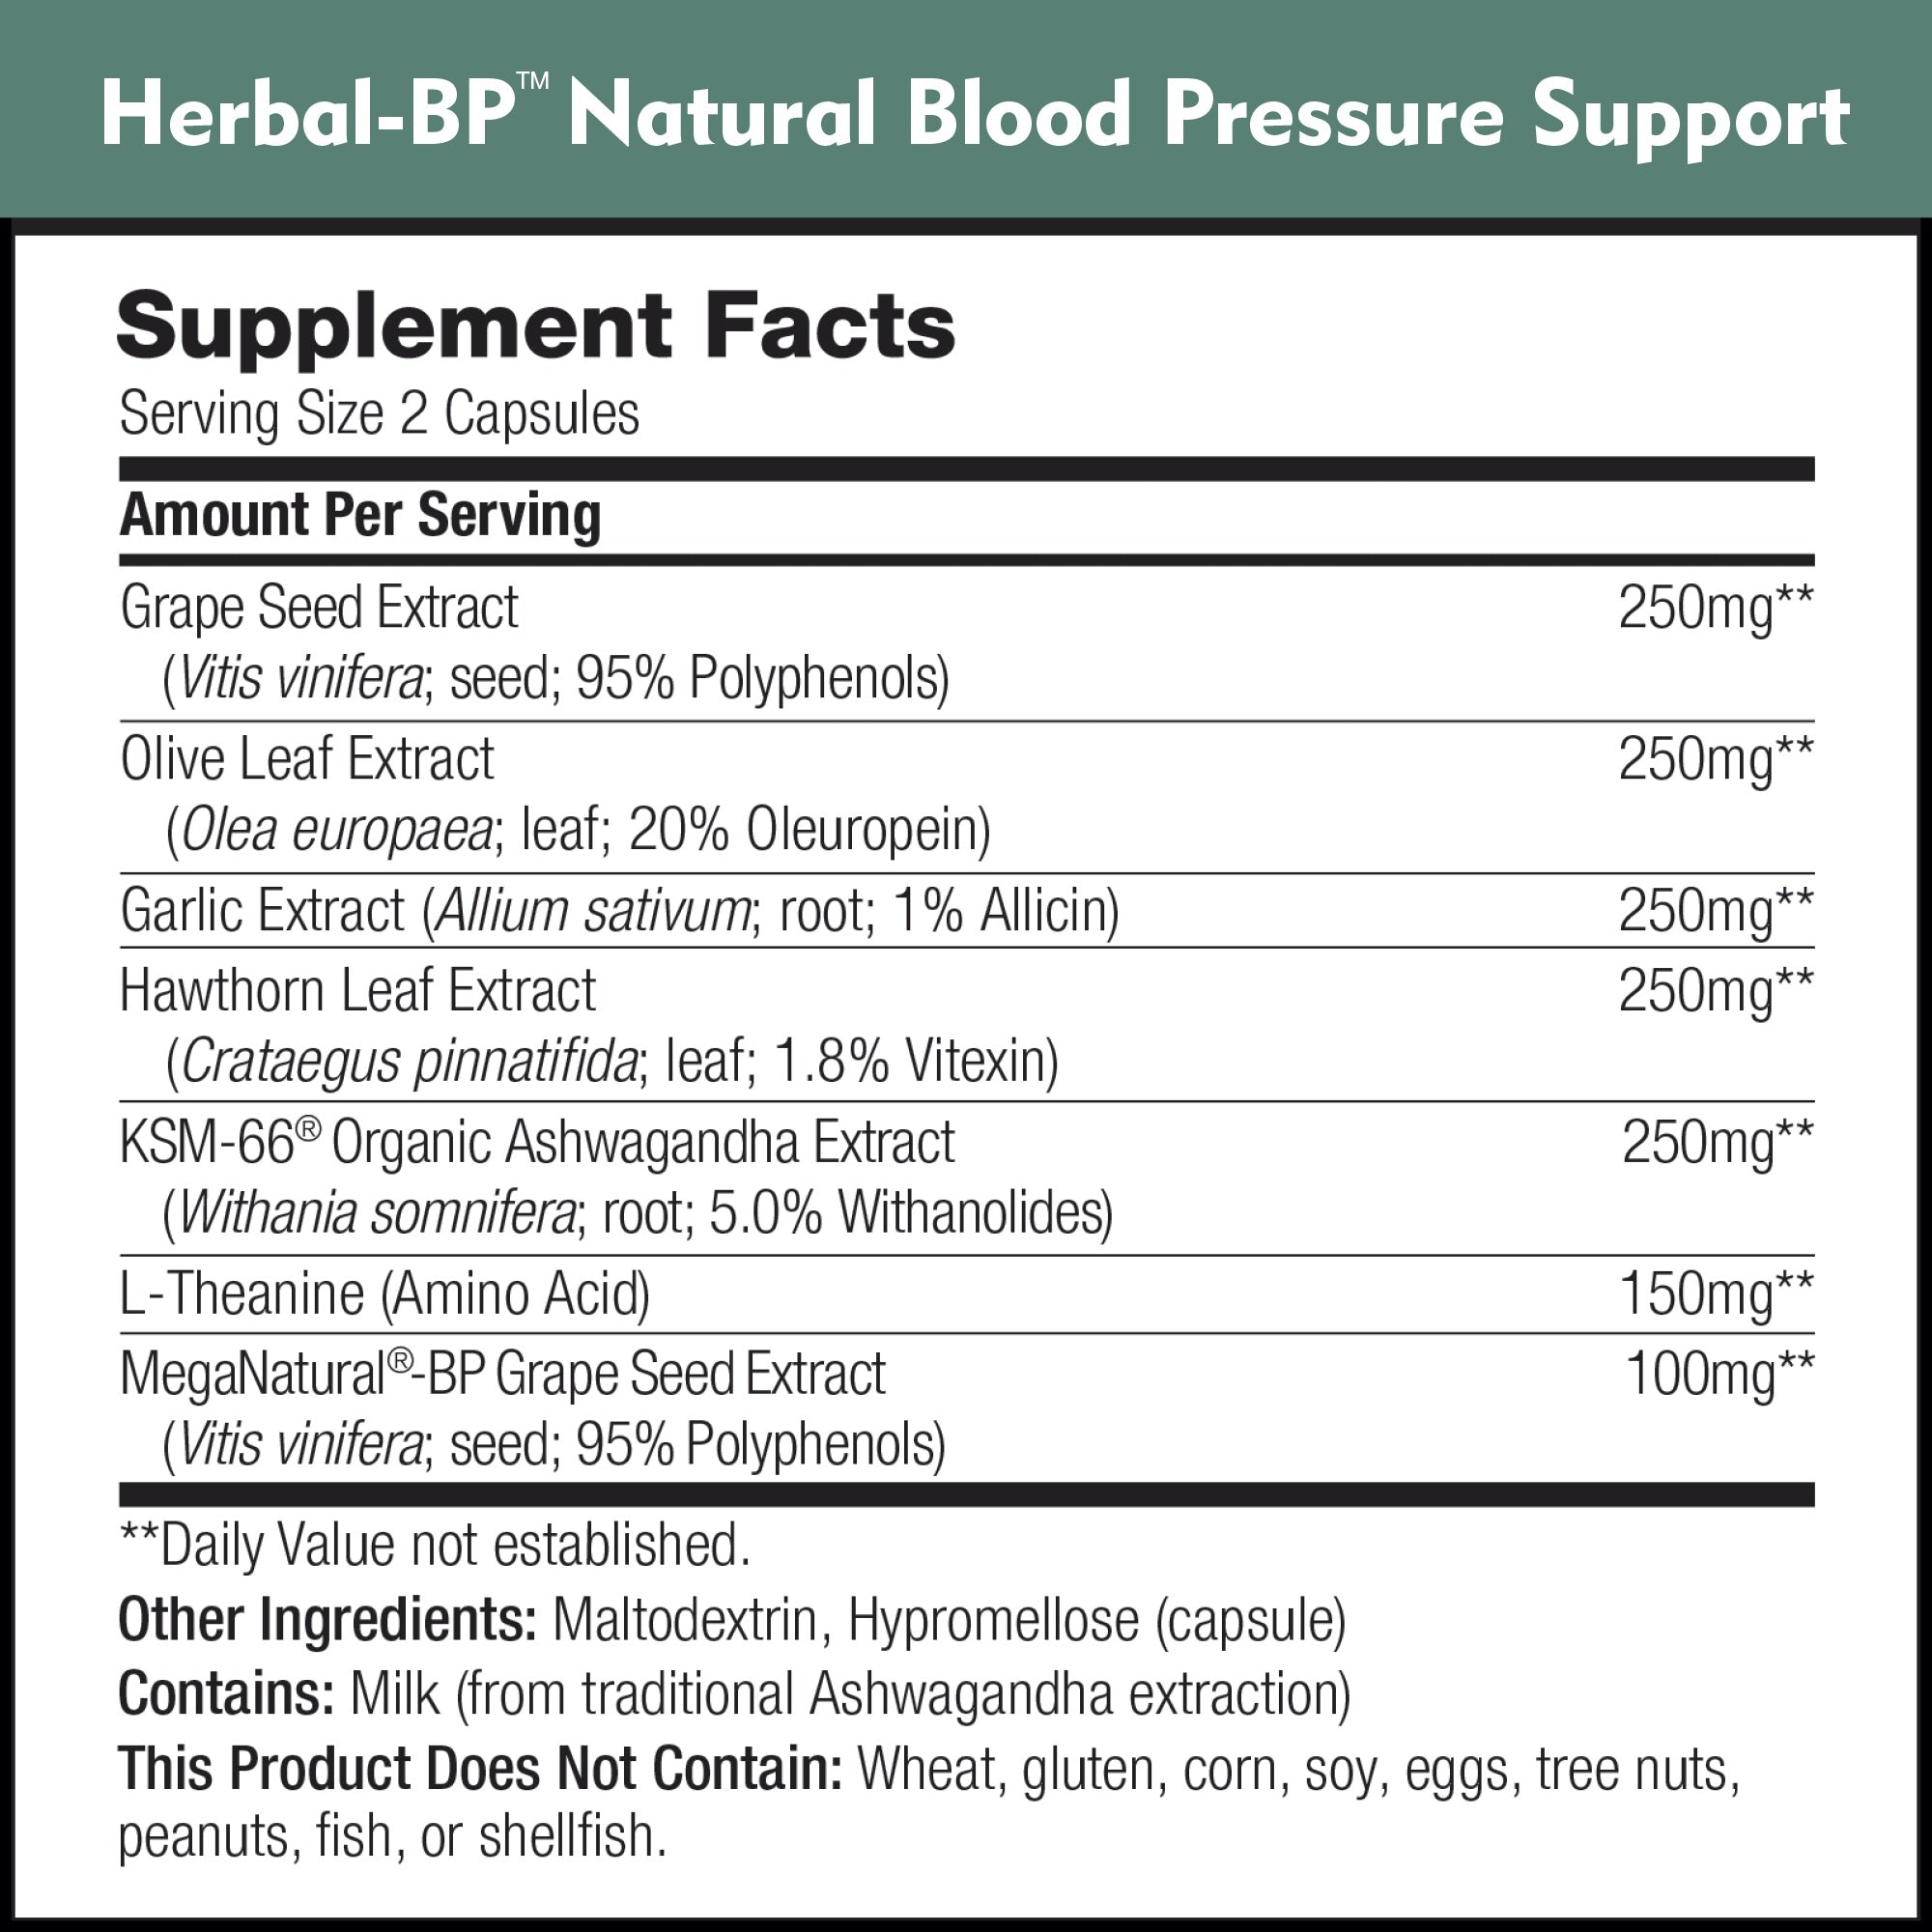 Herbal-BP Blood Pressure Support